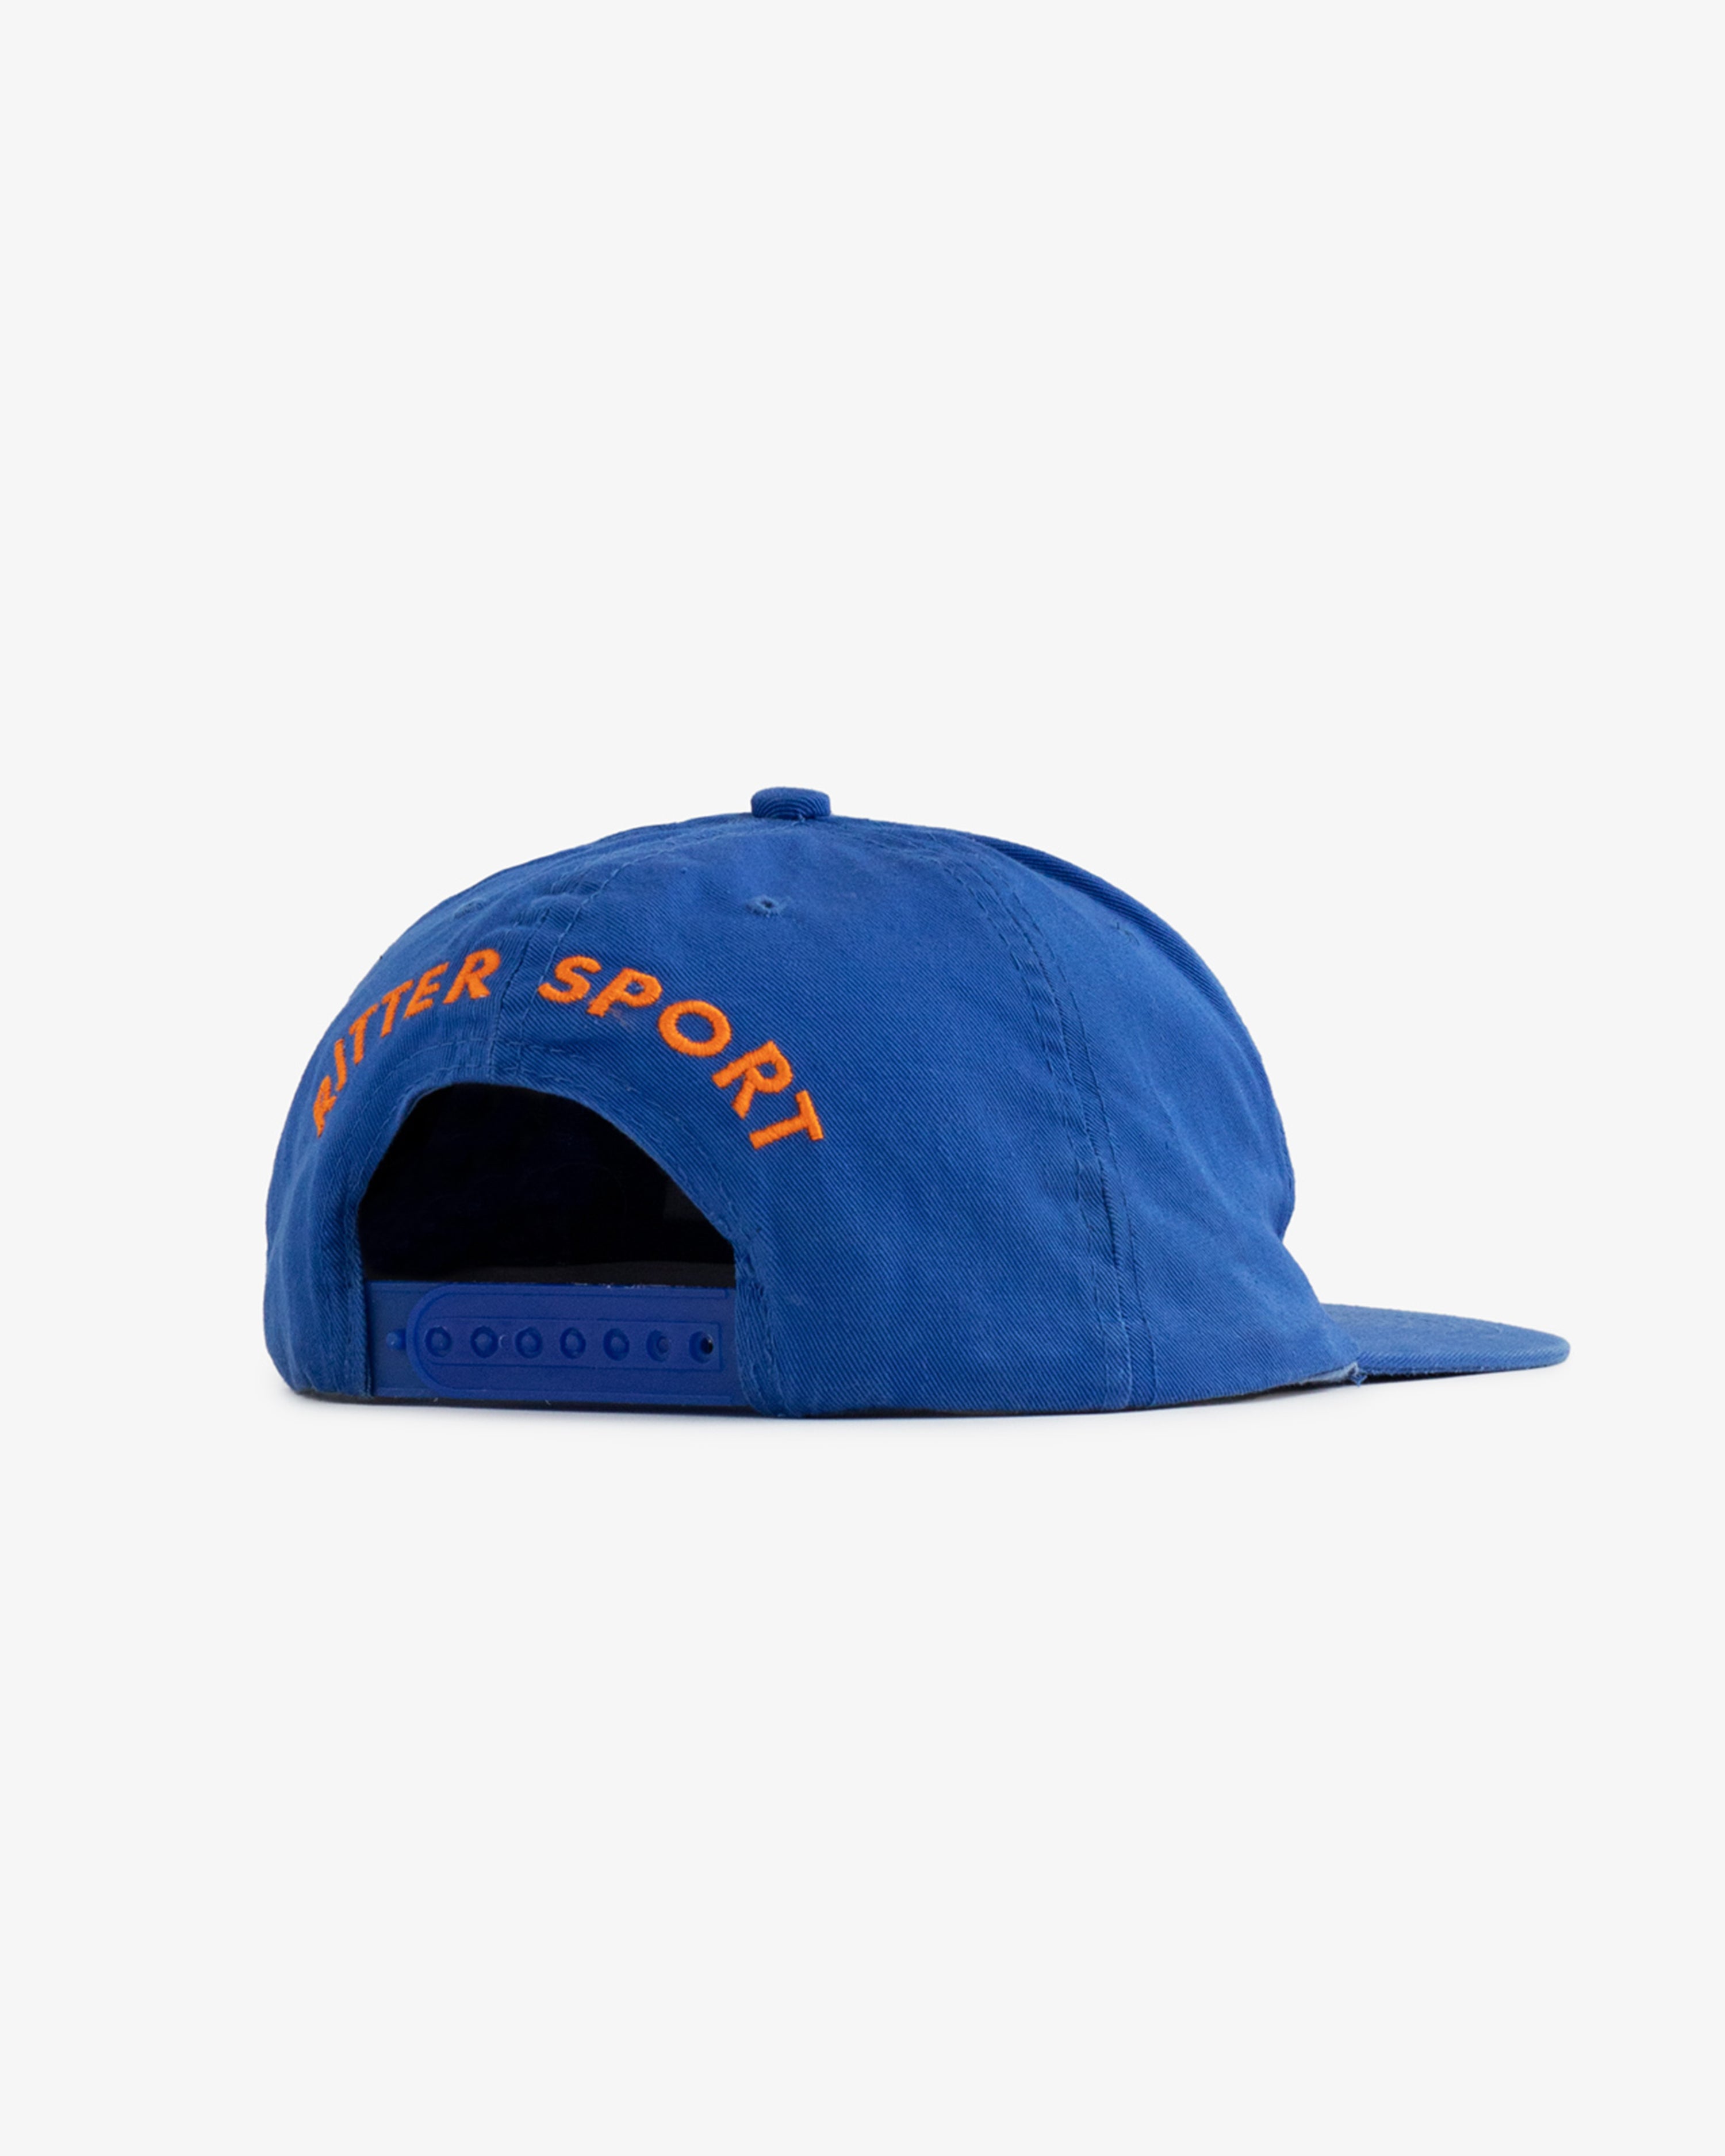 Vintage Rittersport XXL Hat